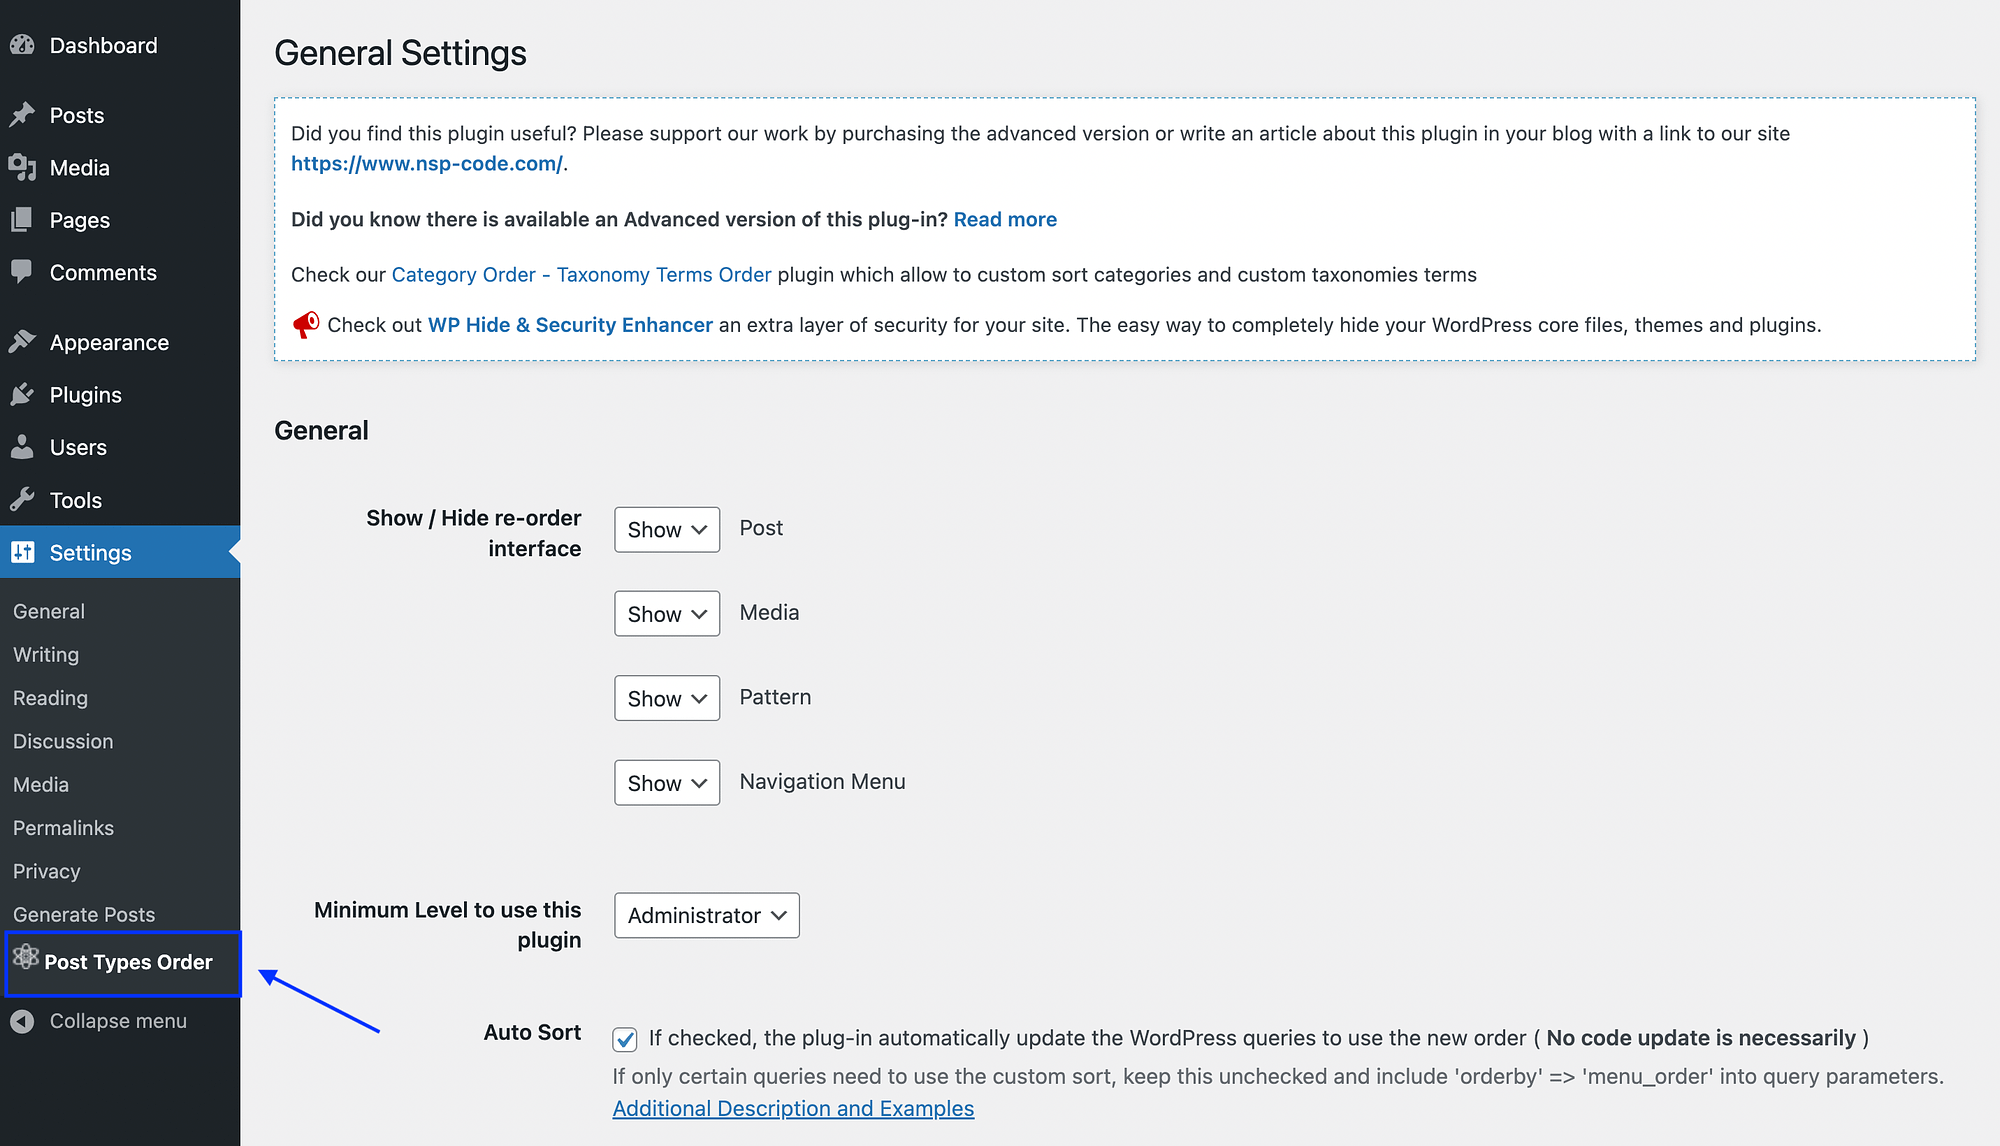 Post Types Order plugin settings